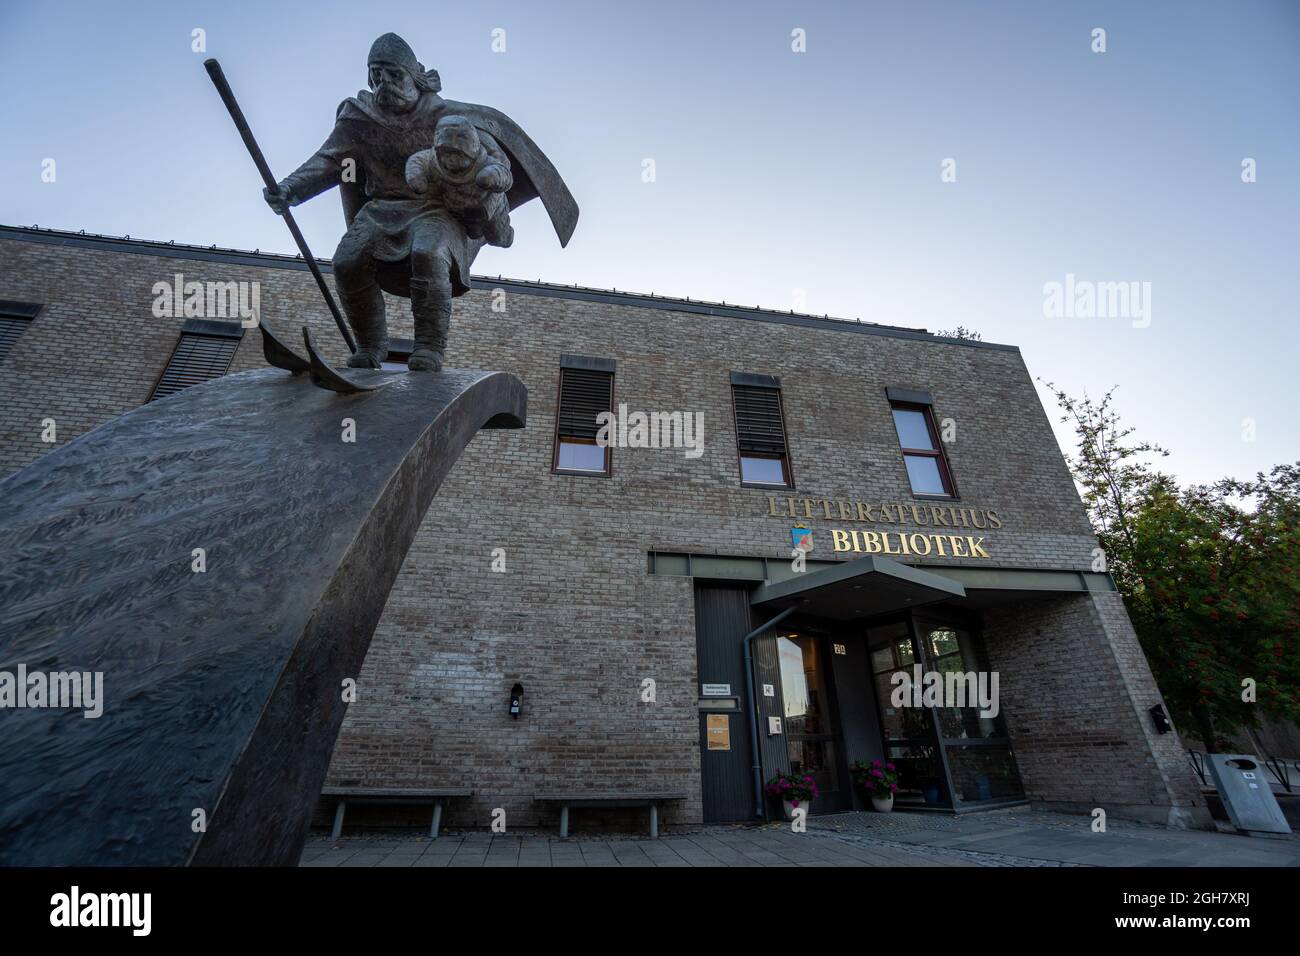 Bronzeskulptur eines Birkebeiner-Kriegers, der den bedrohten Prinzen Haakonsson vor der öffentlichen Bibliothek in Lillehammer, Norwegen, rettet Stockfoto